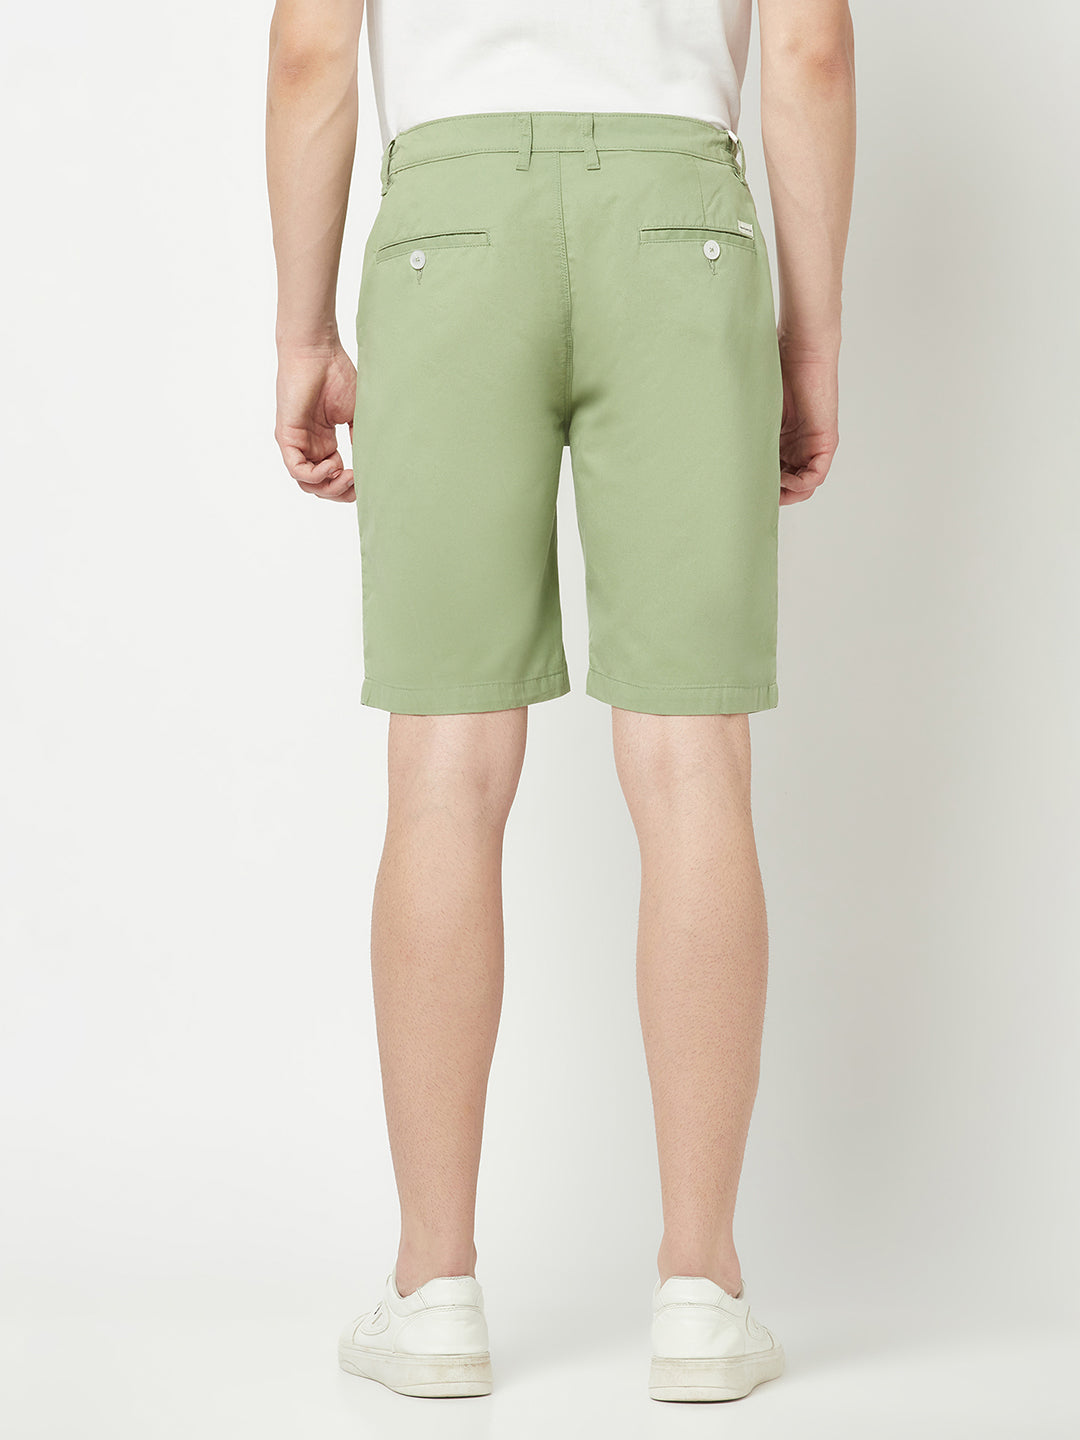  Green Chino Shorts